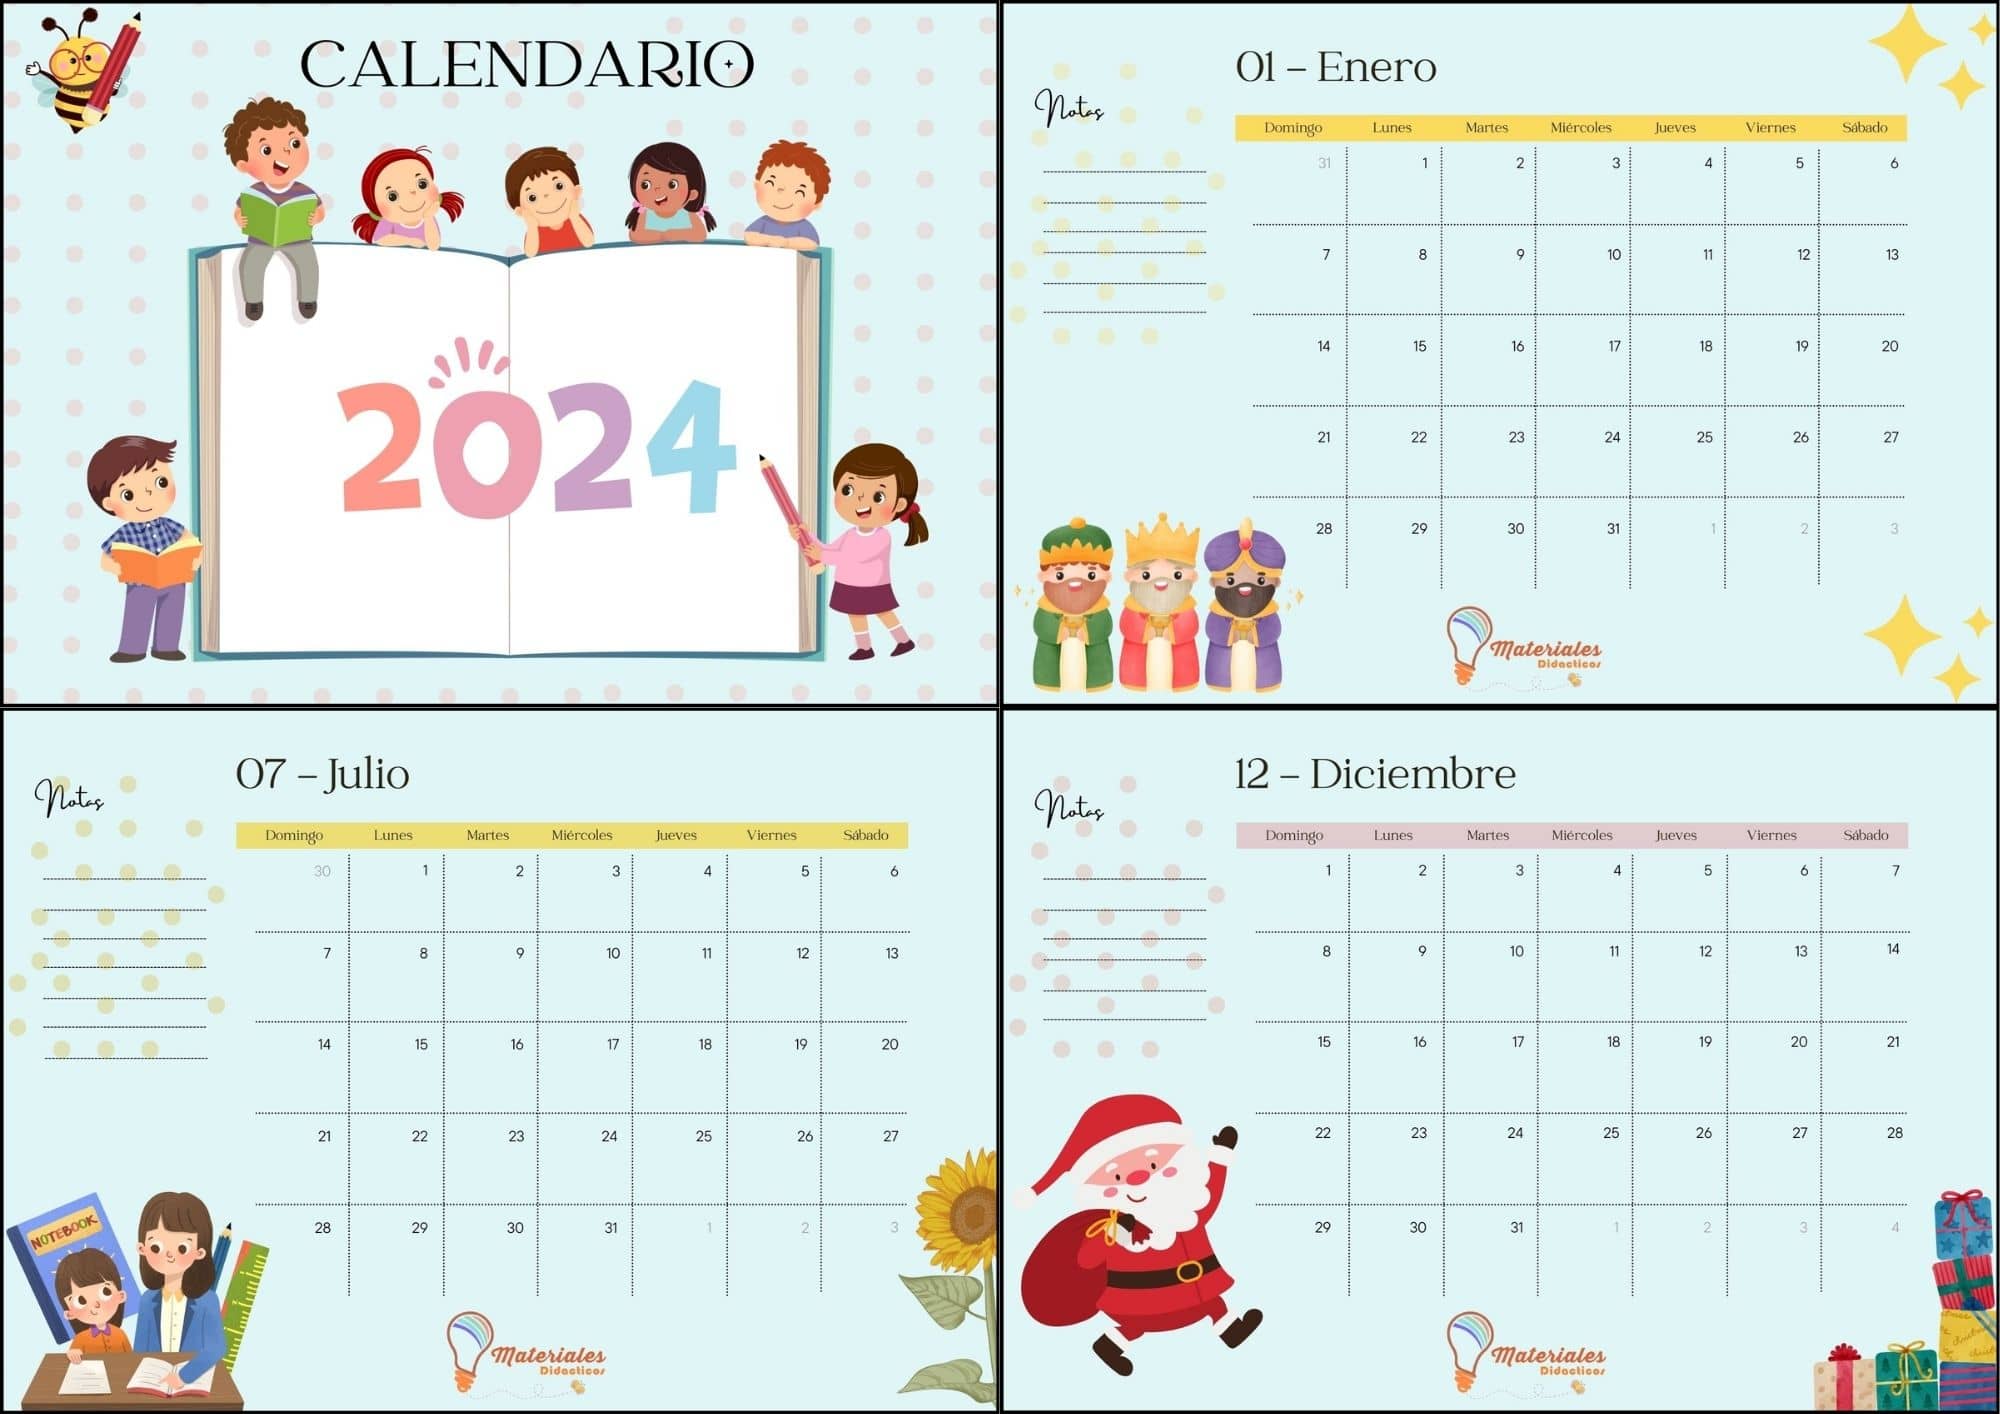 calendario anual 2024